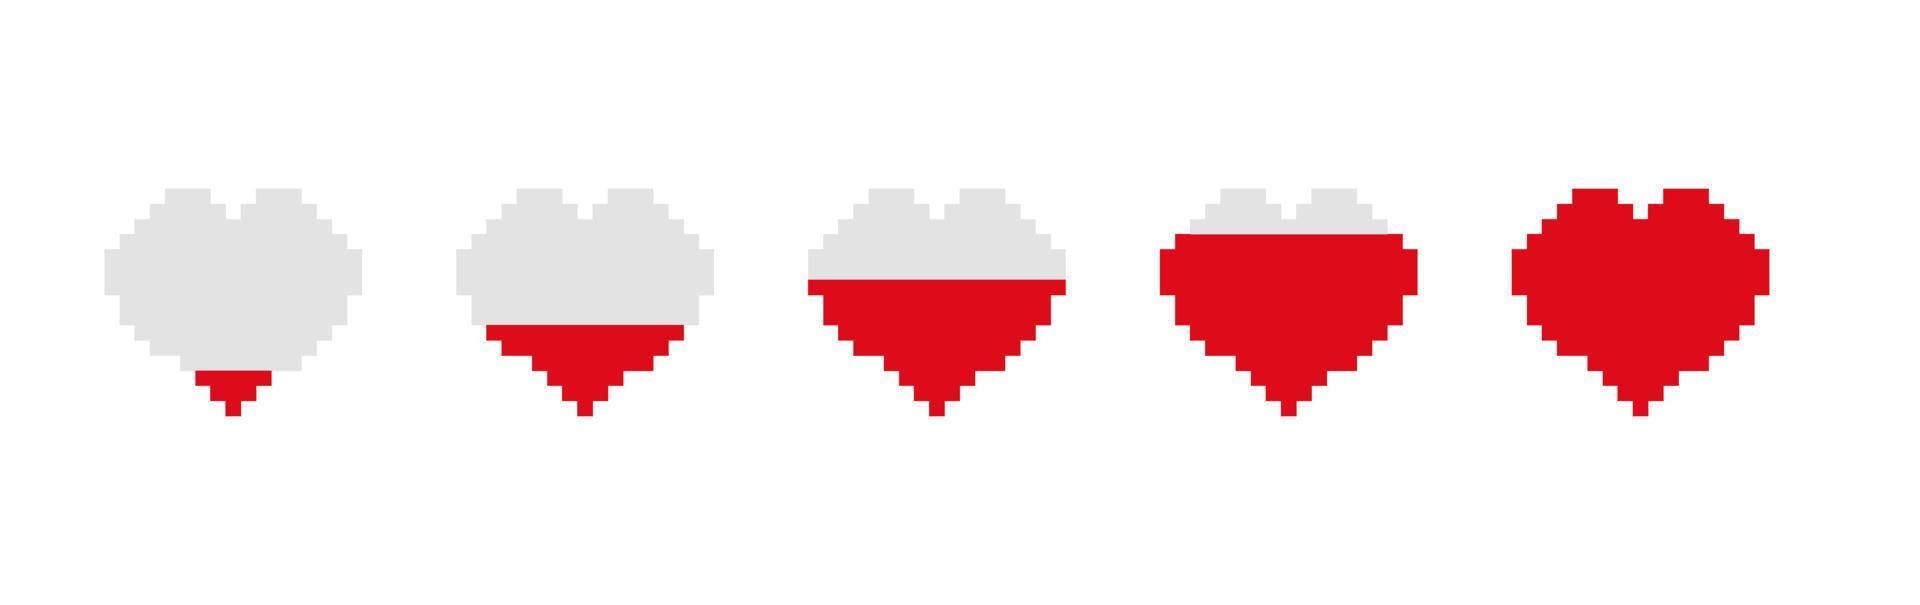 gioco bar Riempimento cuore. passaggi di energia Conservazione nel vuoto e gradualmente pieno pixel cuore grafico mobile interfaccia colorato indicatore di gioco valutazione e vettore premio.